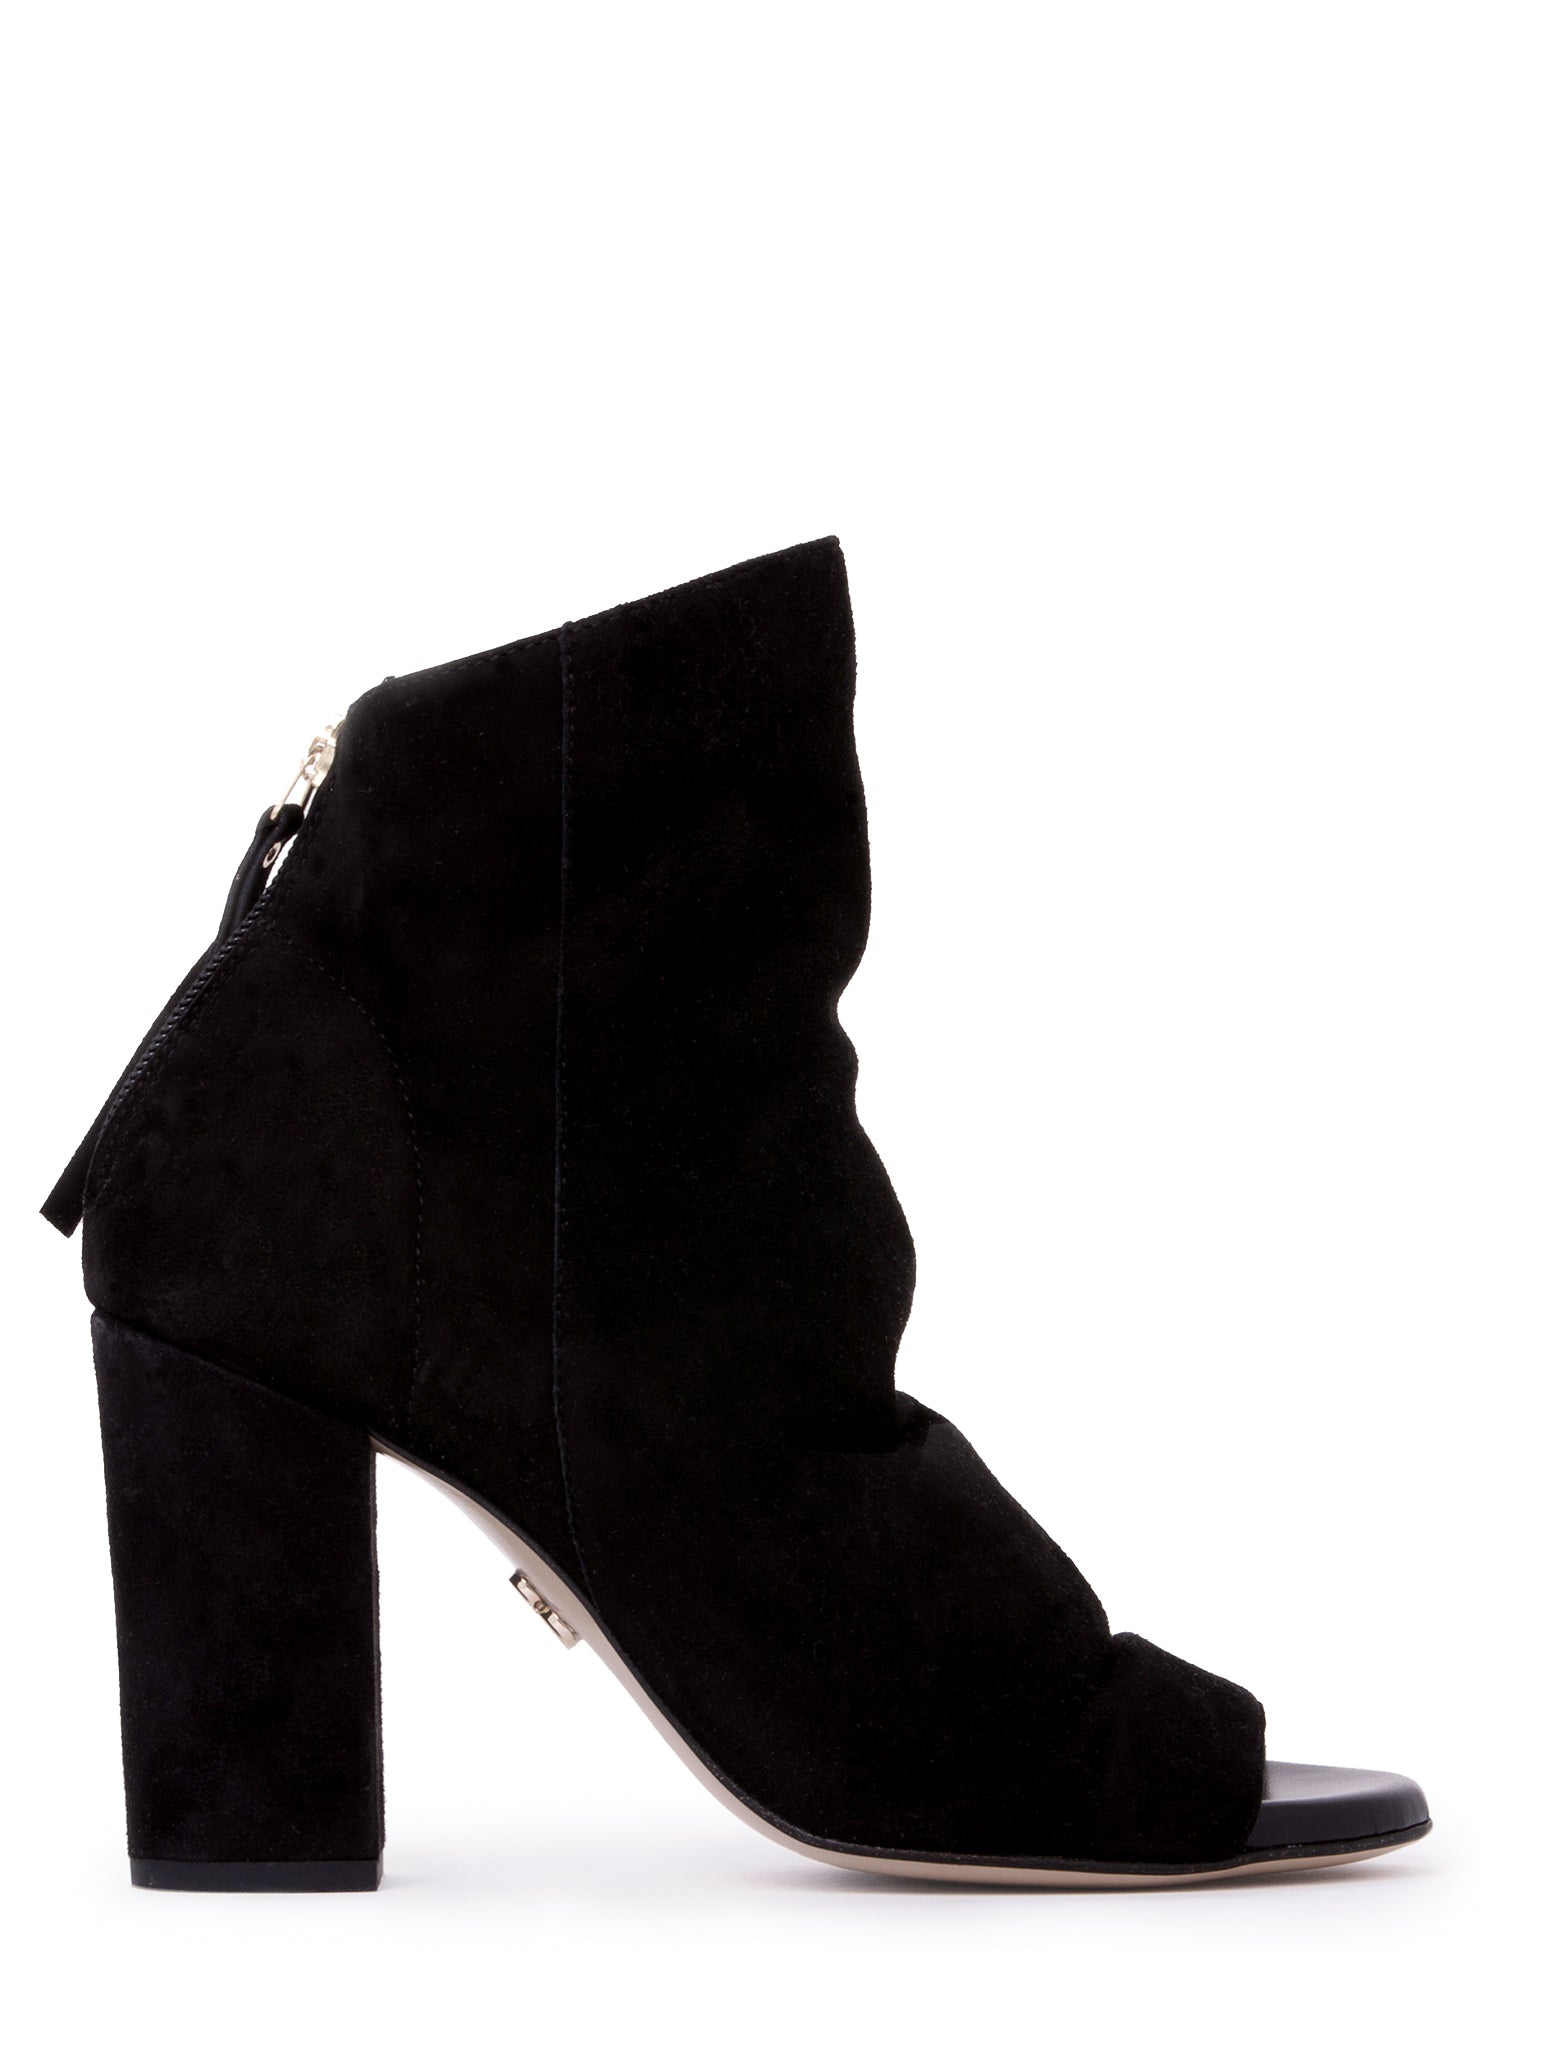 Women’s Hedy Black Work Evening Shootie Bootie Block Heel Suede 4.5 Uk Beautiisoles by Robyn Shreiber Made in Italy